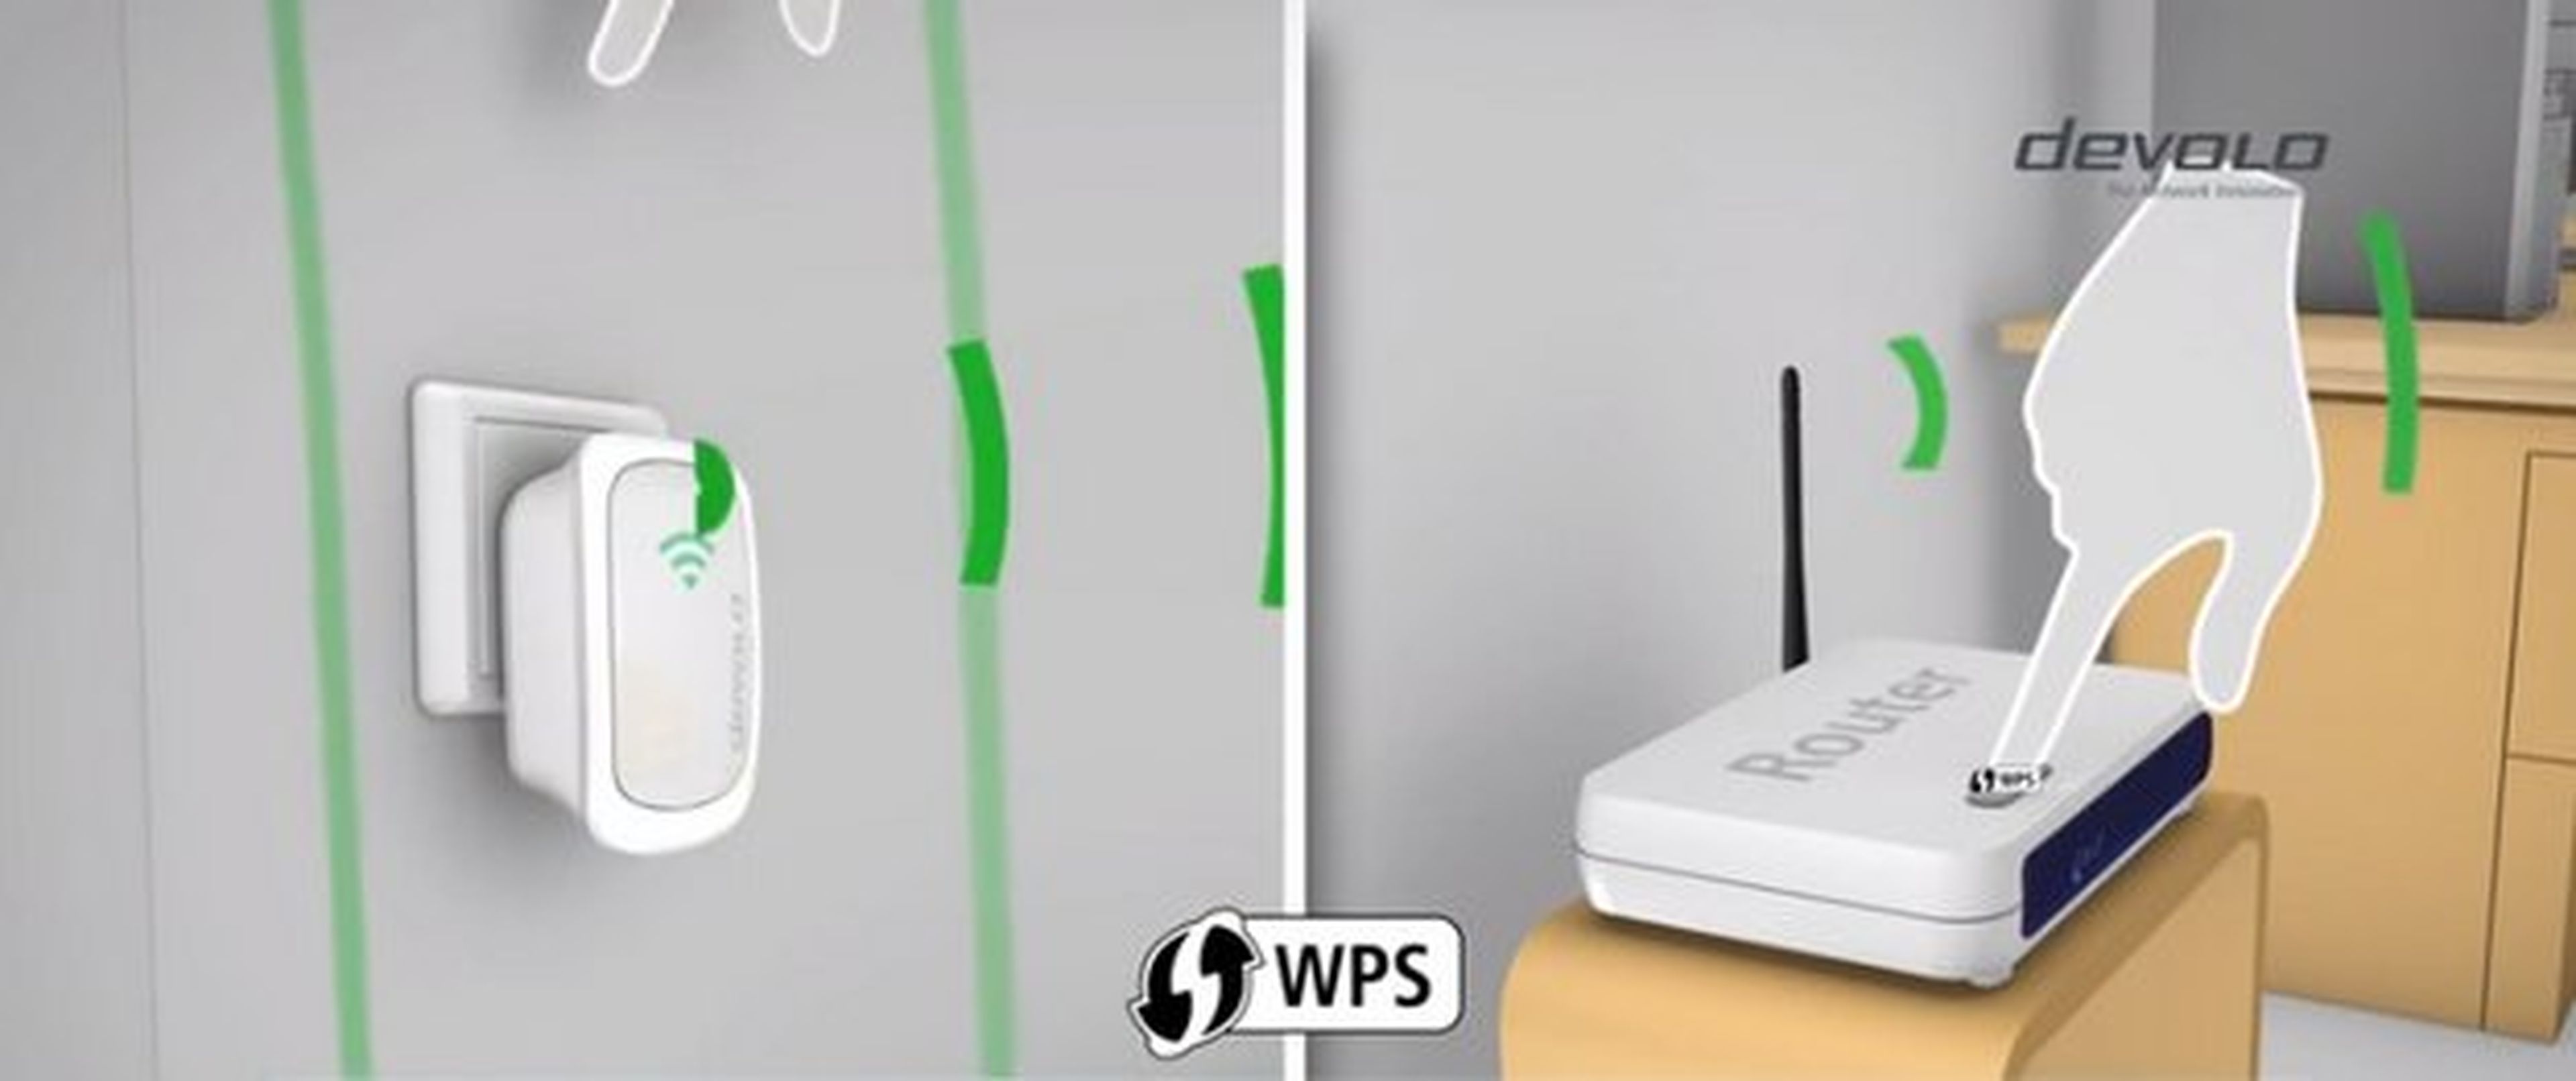 Repetidor WiFi o Amplificador WiFi: Qué es, cómo funciona y cúal comprar